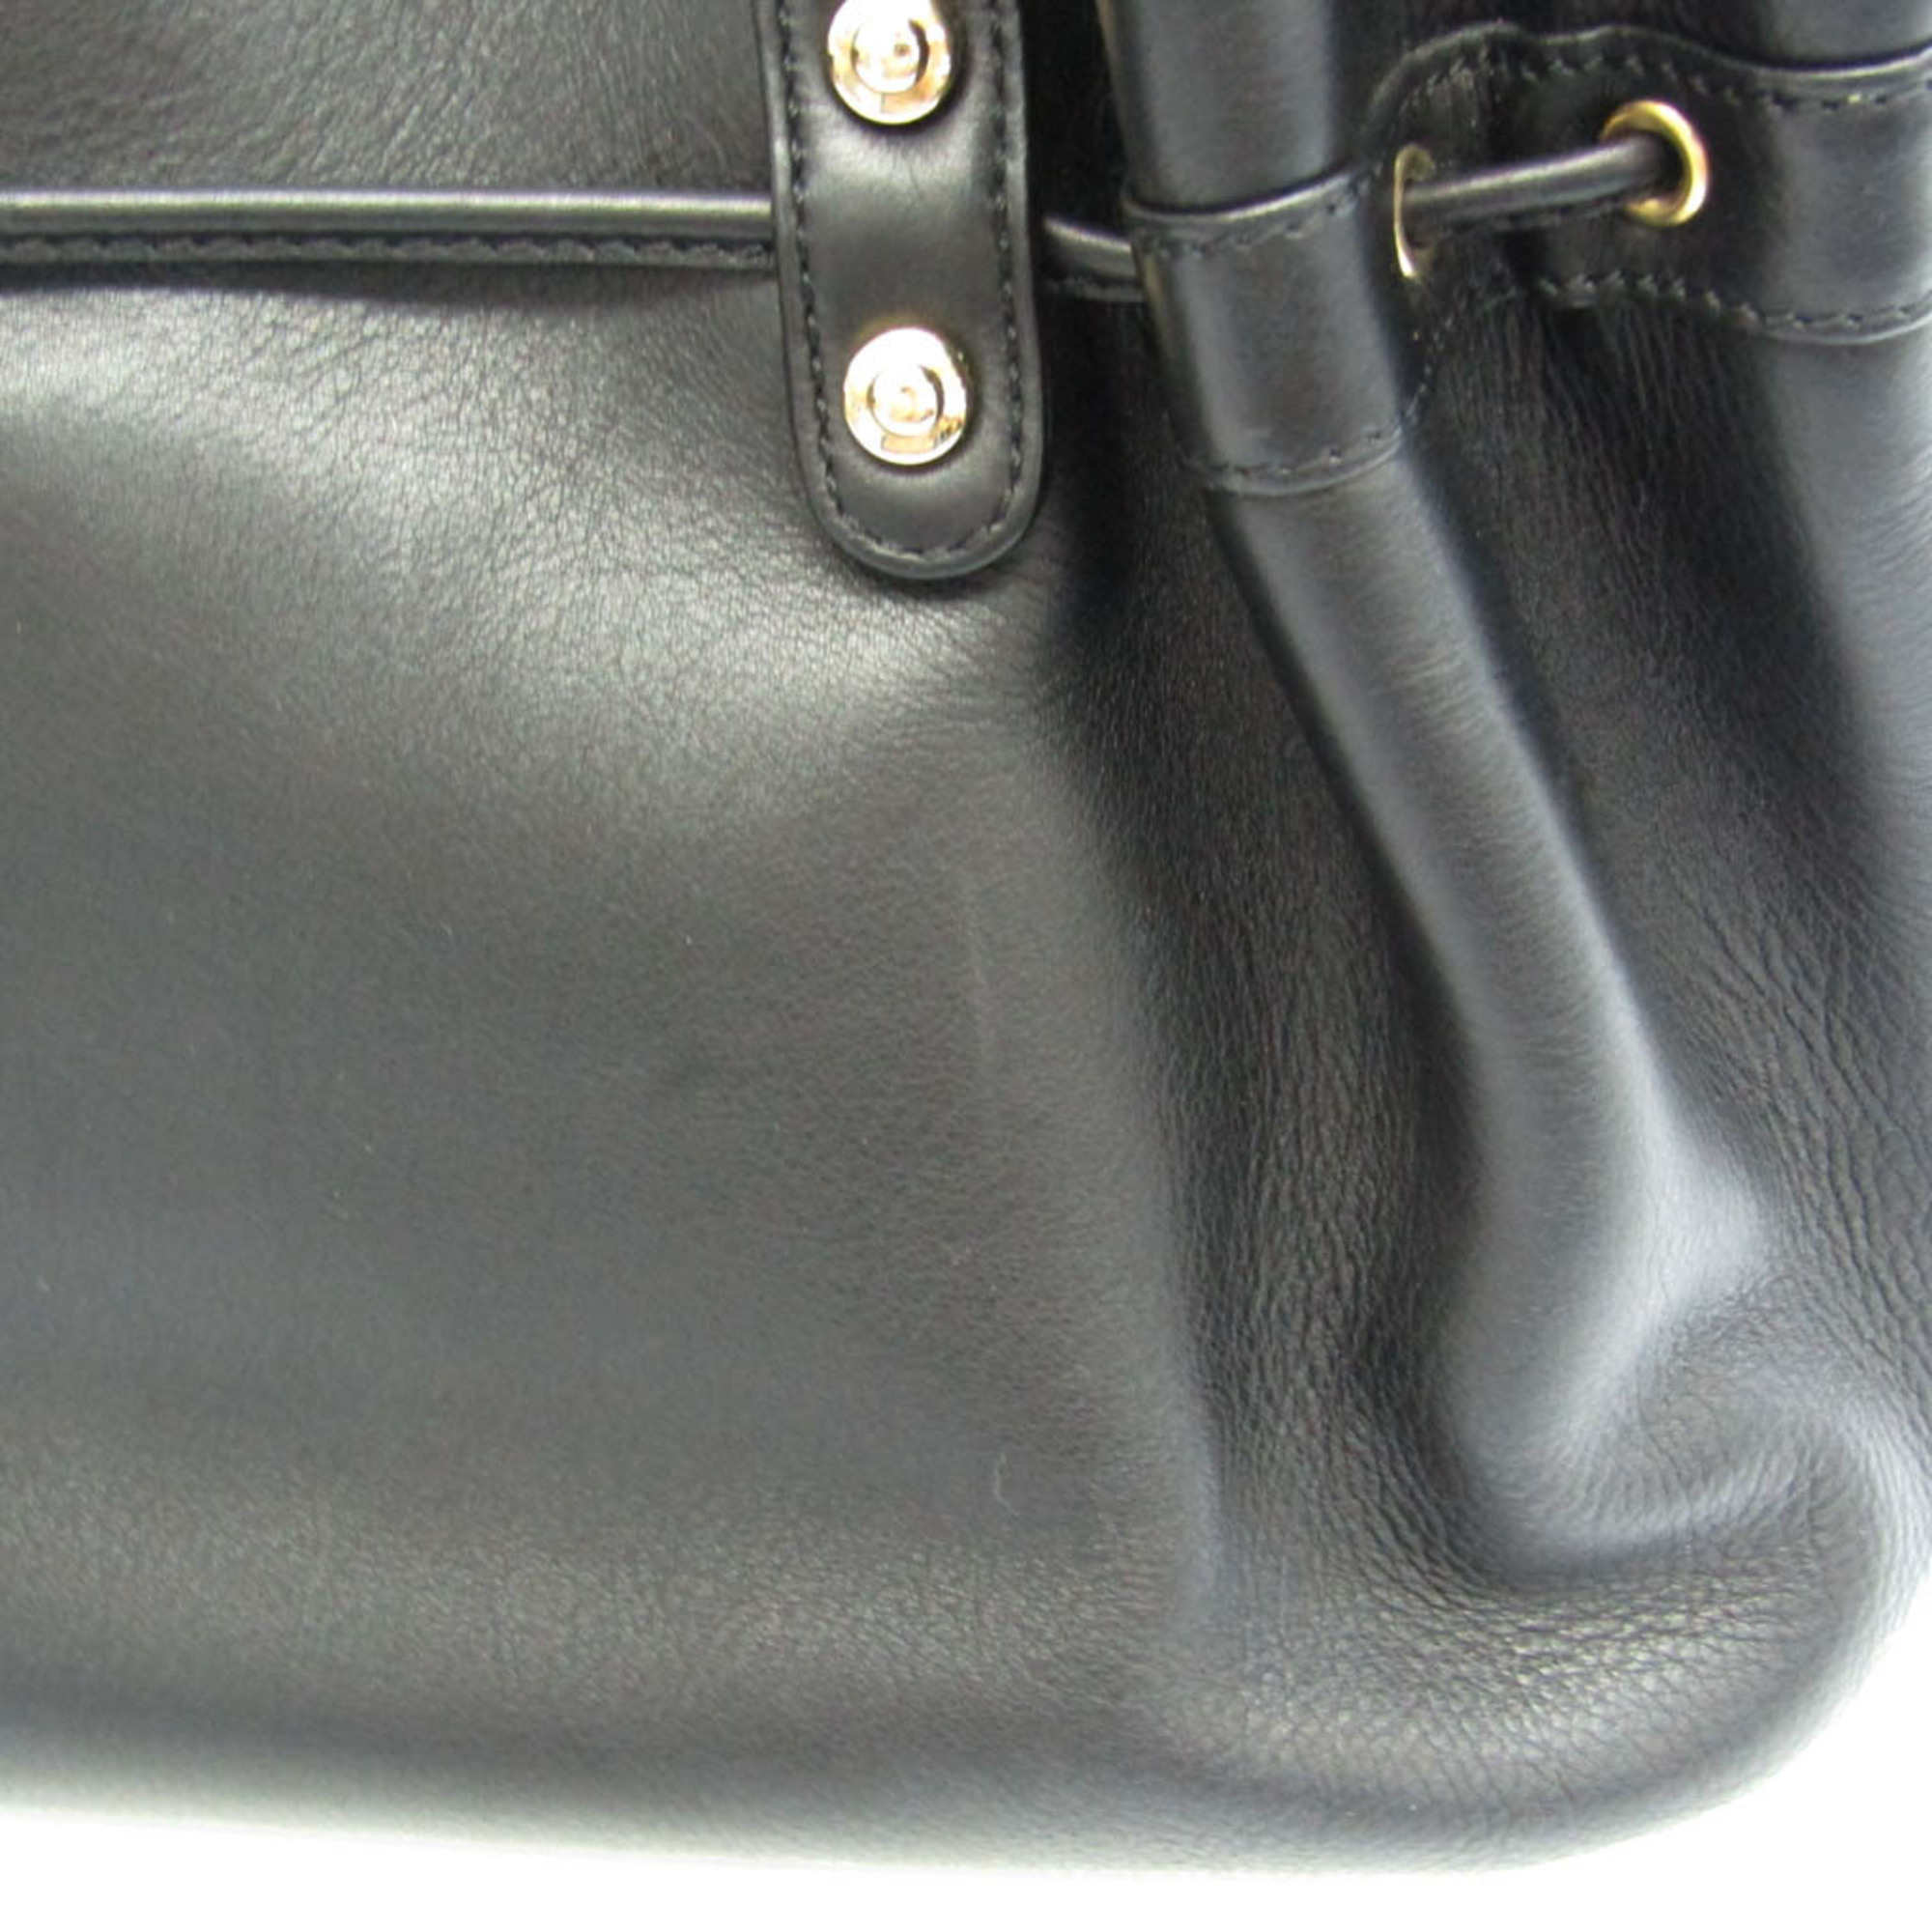 Morabito Women's Leather Handbag Black